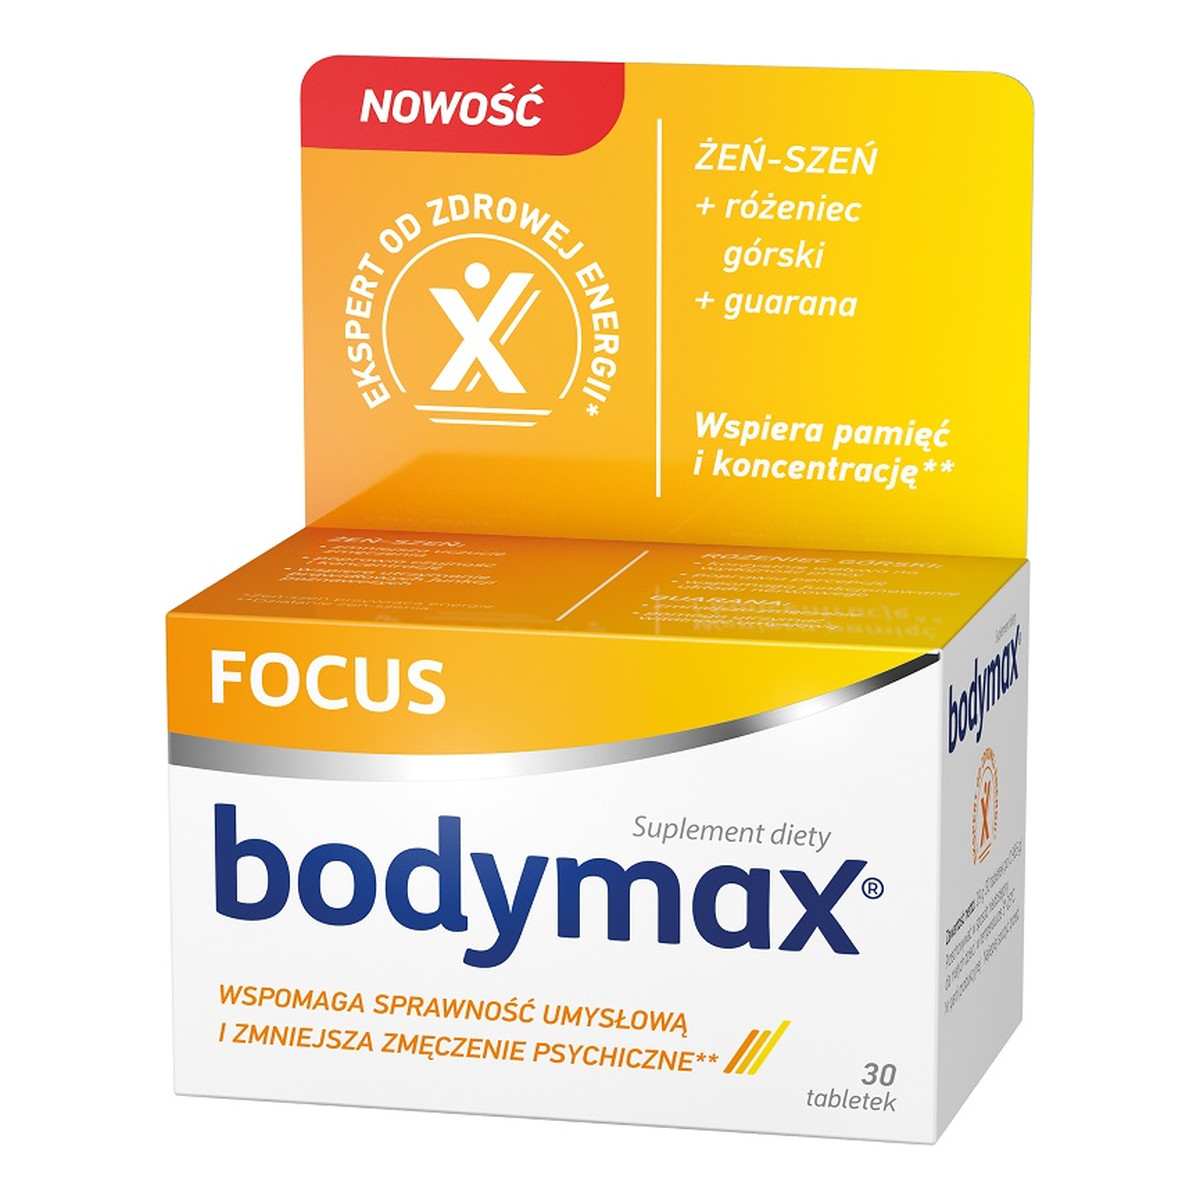 Bodymax Focus suplement diety 30 tabletek